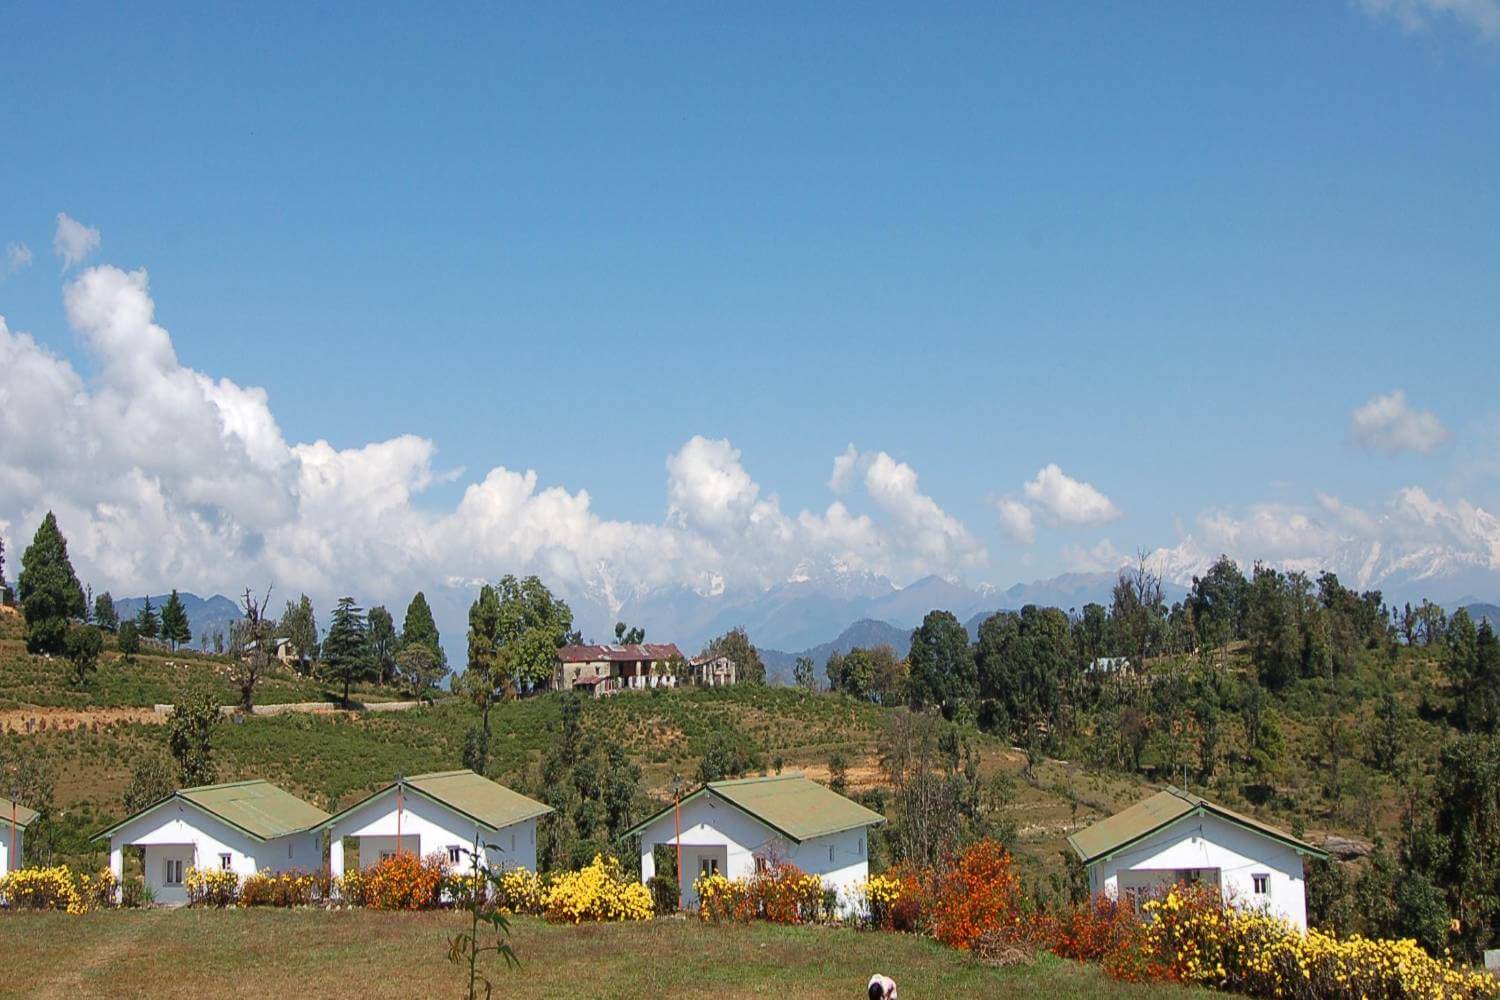 Chaukori Uttarakhand Travel Blog